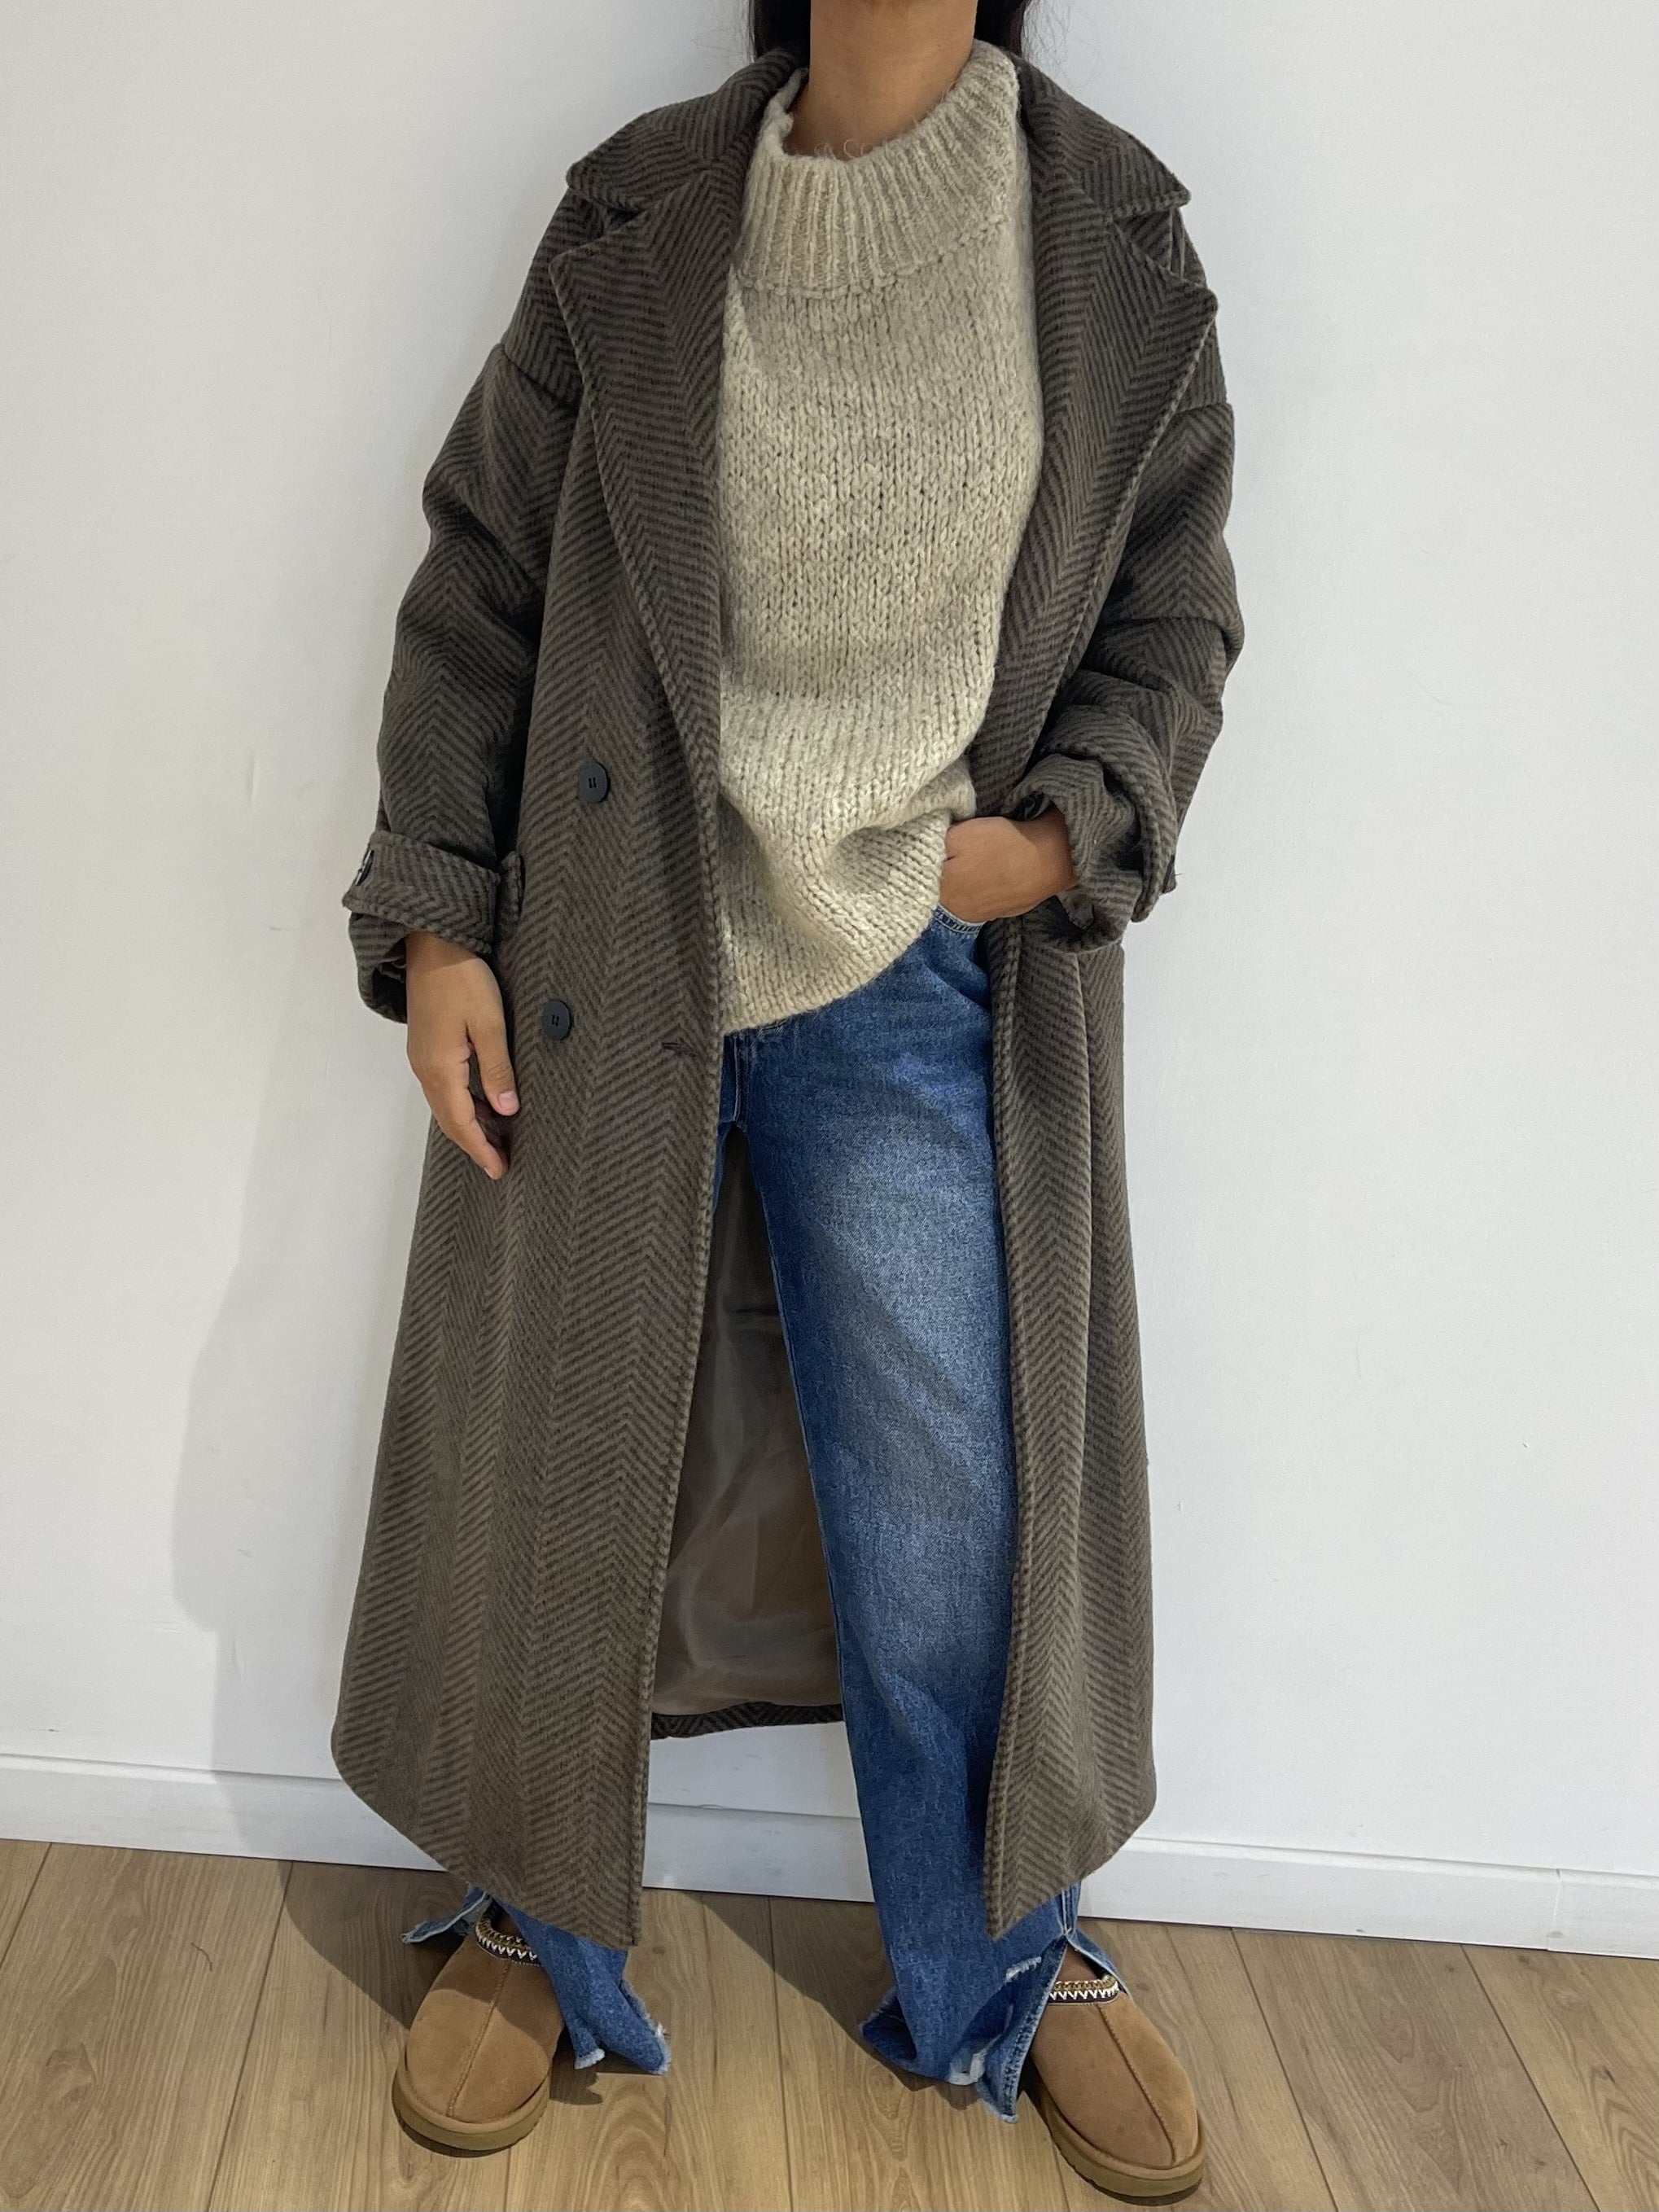 Manteau oversize à chevrons porté avec pull et jean pour un look quotidien confortable.